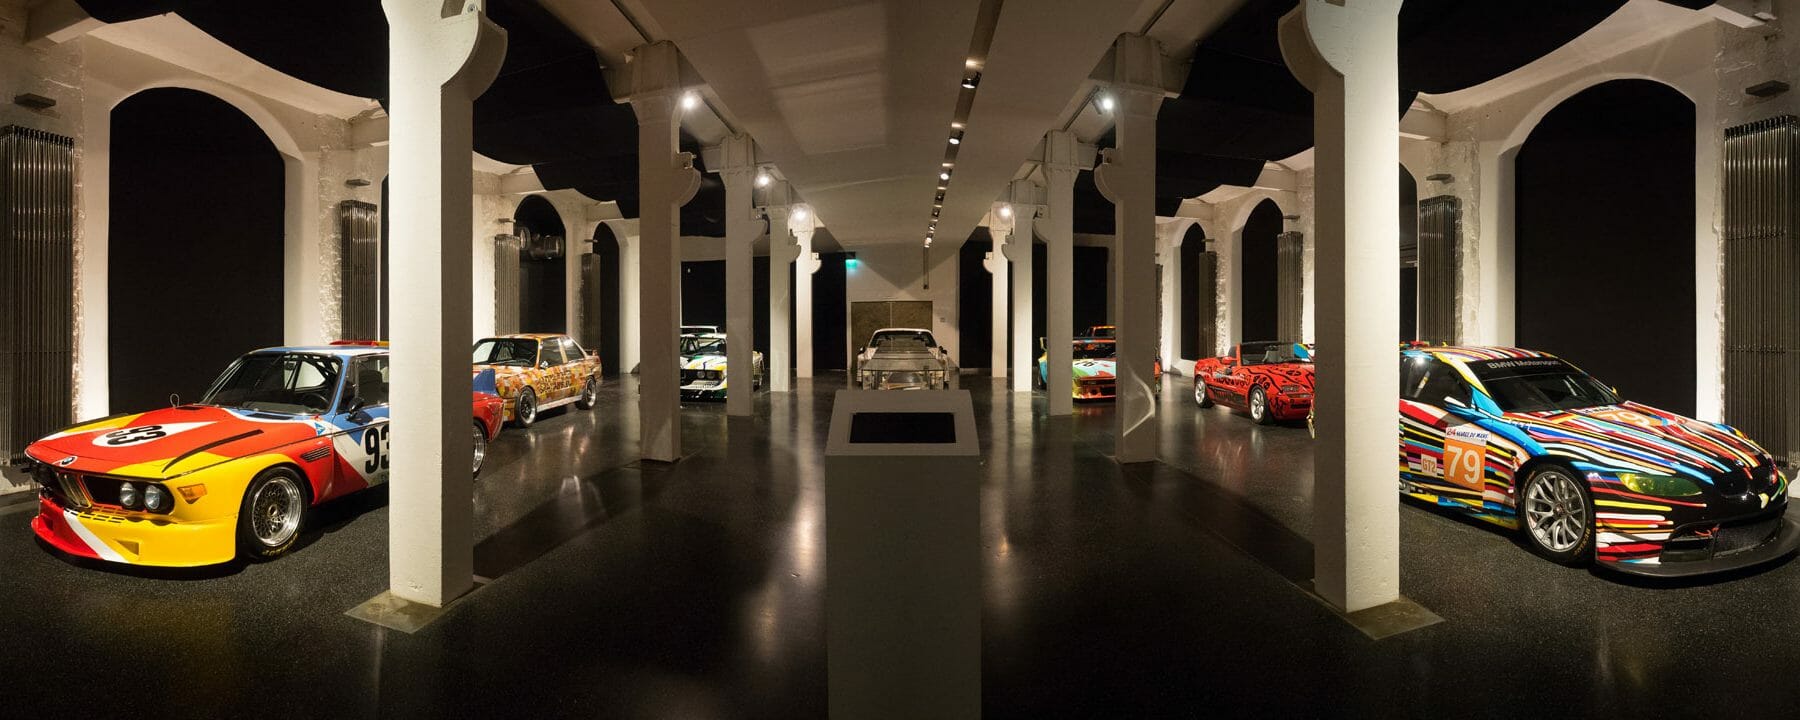 In der Sonderausstellung „BMW Art Cars“ zeigte das Automuseum PROTOTYP 2016/2017 neun dieser rollenden Skulpturen, die von international renommierten Künstlern wie z. B. Andy Warhol, Roy Lichtenstein und Jeff Koons gestaltet wurden und auf Rennstrecken wie in großen Museen weltweit für Aufsehen sorgten.